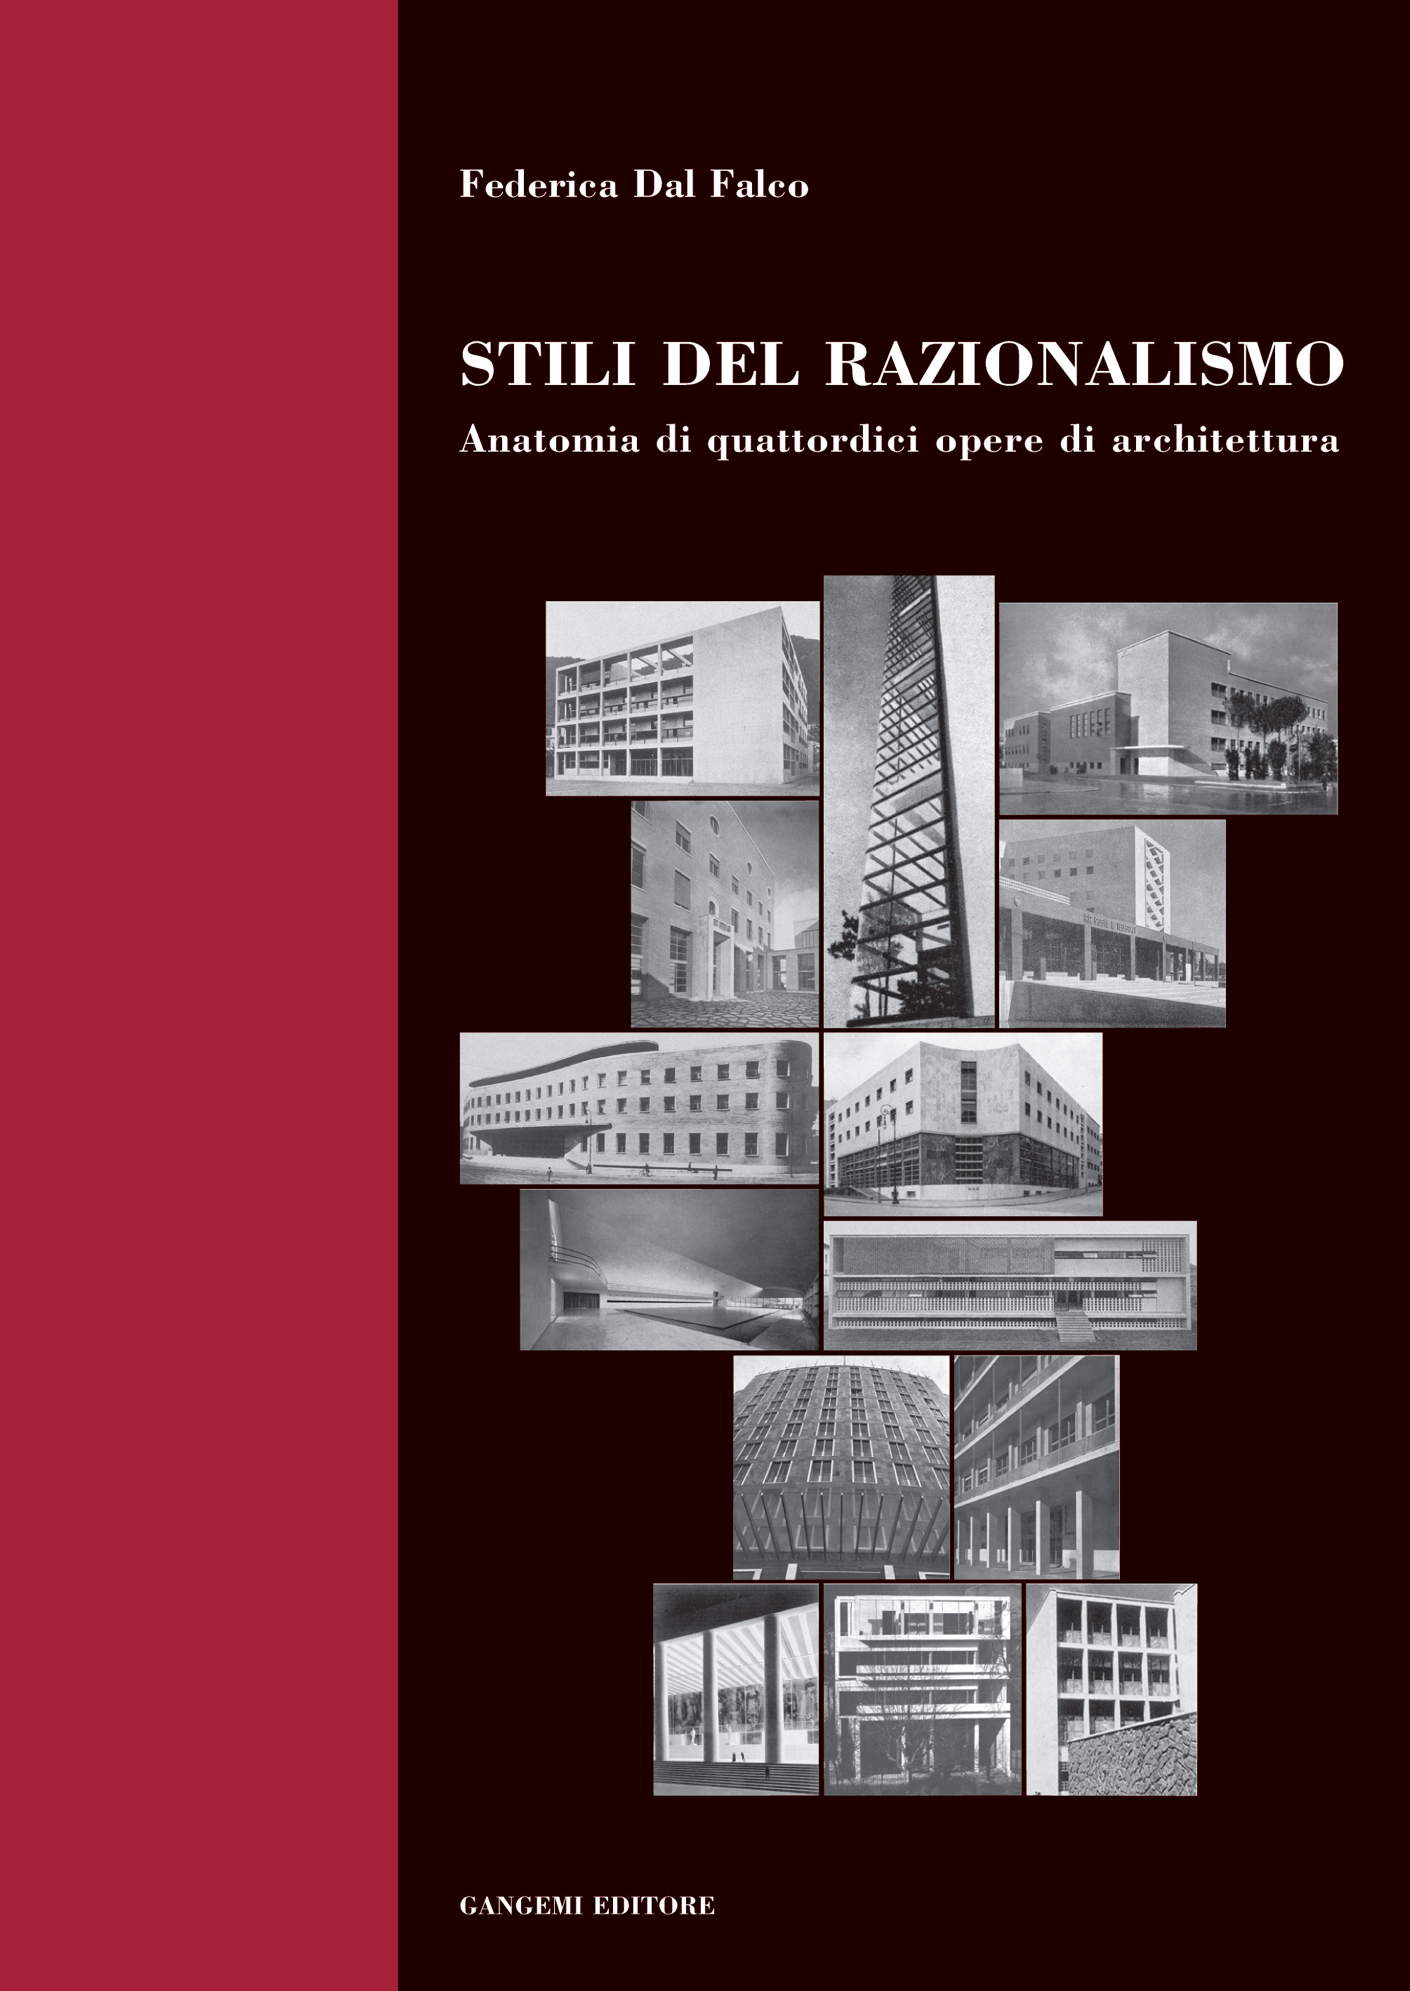 eBook, Stili del razionalismo : anatomia di quattordici opere di architettura, Dal Falco, Federica, Gangemi